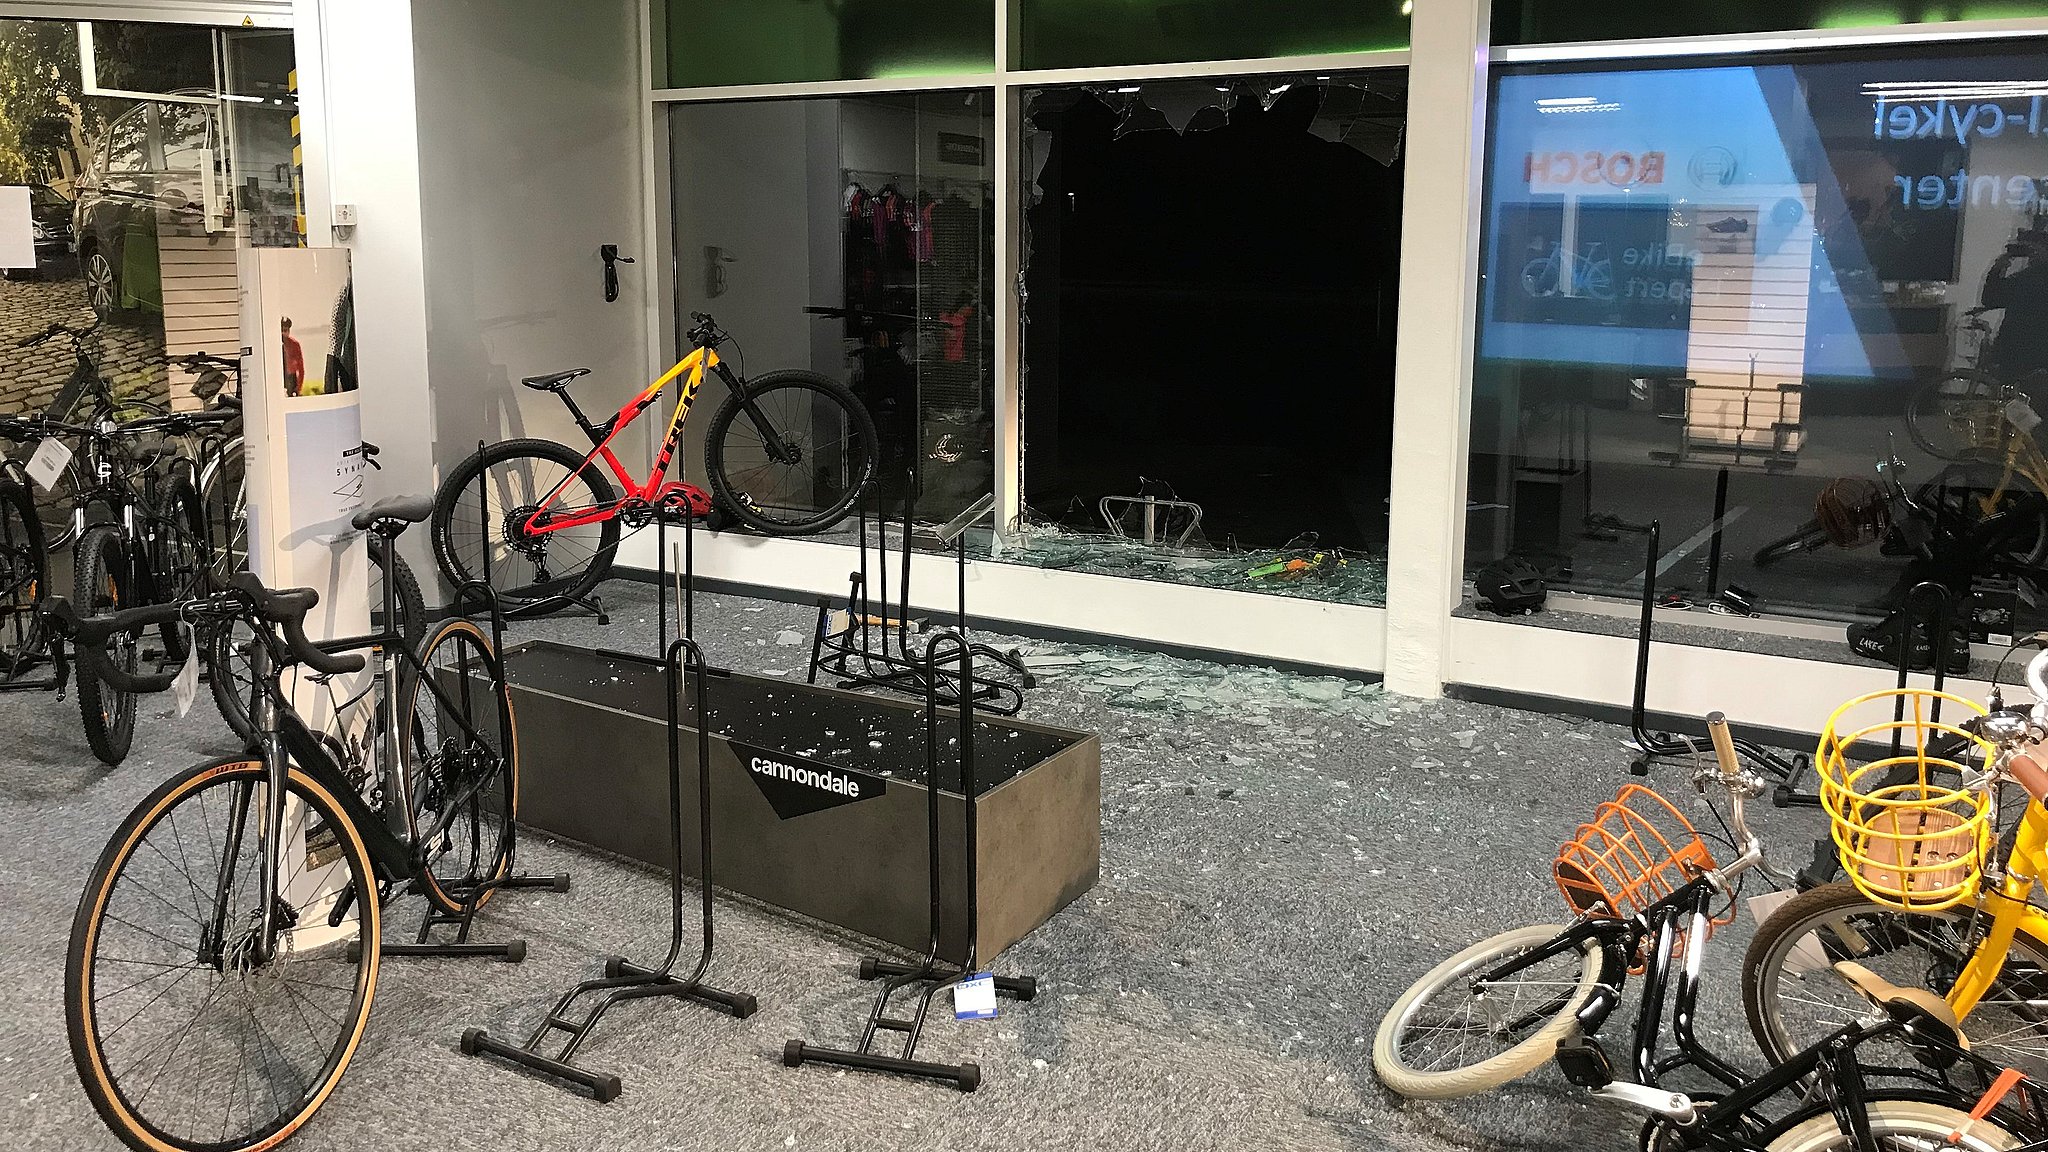 Gemme ledsage Quagmire Politiet advarer mod at købe stjålne cykler efter natligt kup | TV SYD